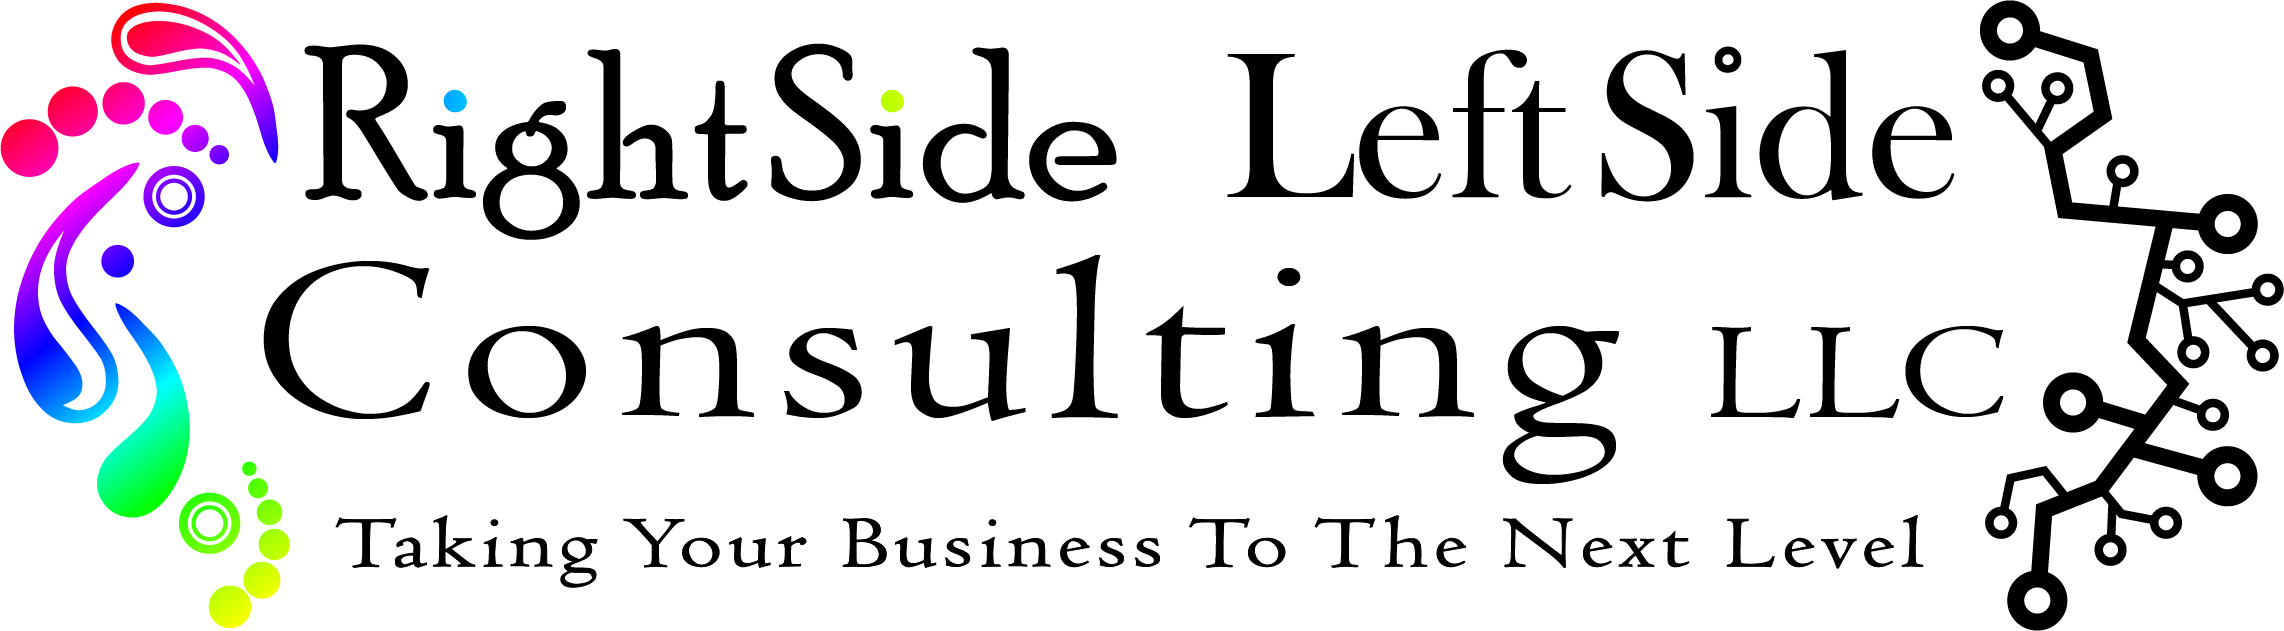 RightSide LeftSide Consulting LLC